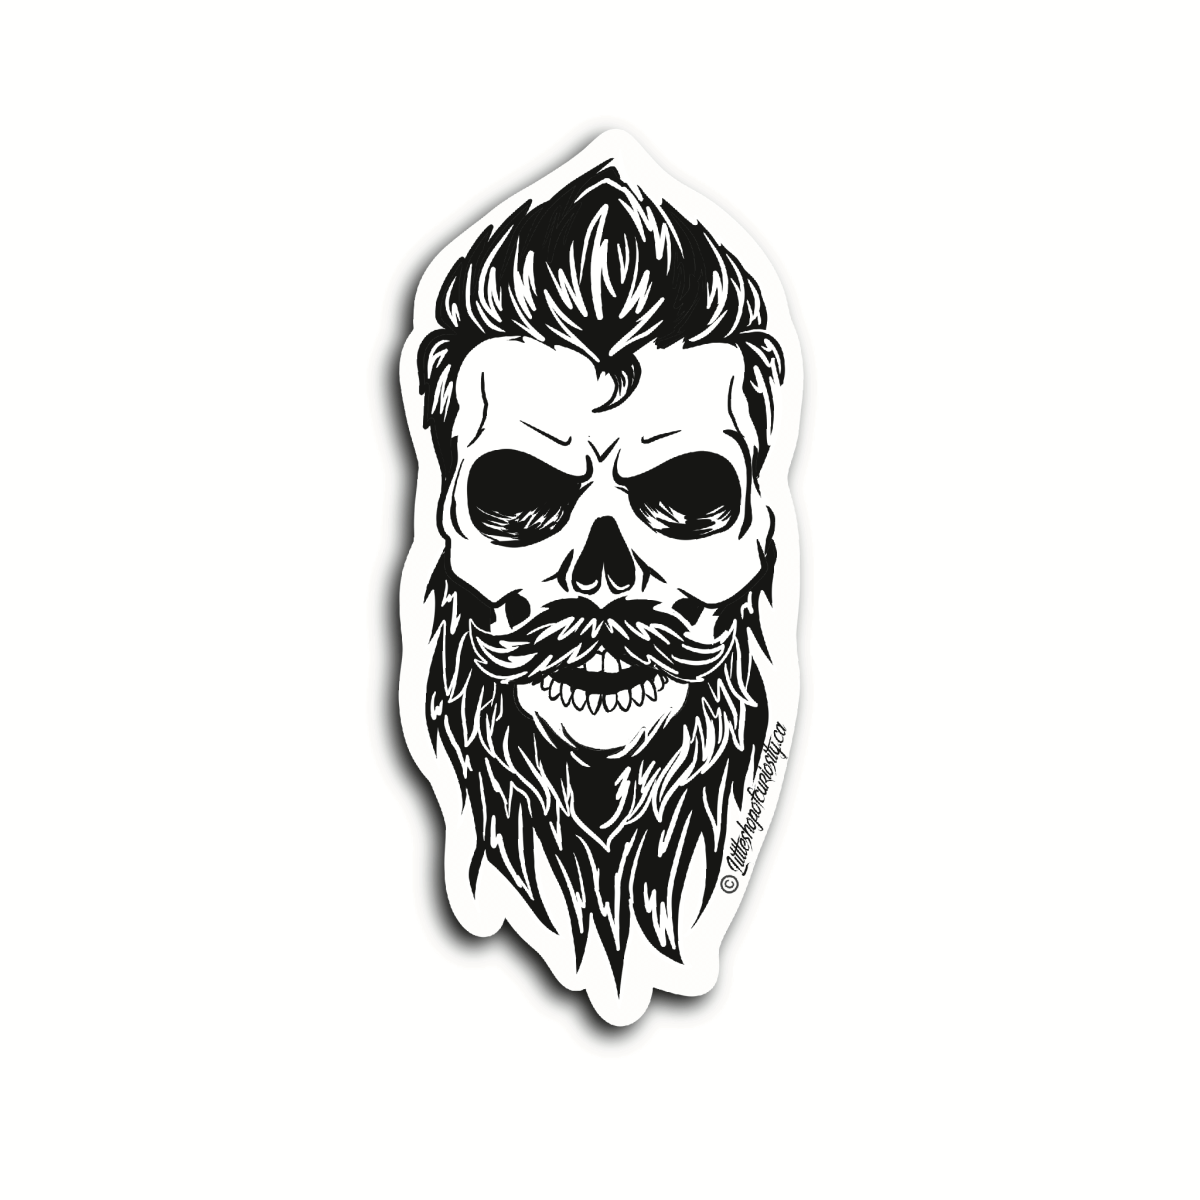 Bearded Skull Sticker - Black & White Sticker - Little Shop of Curiosity